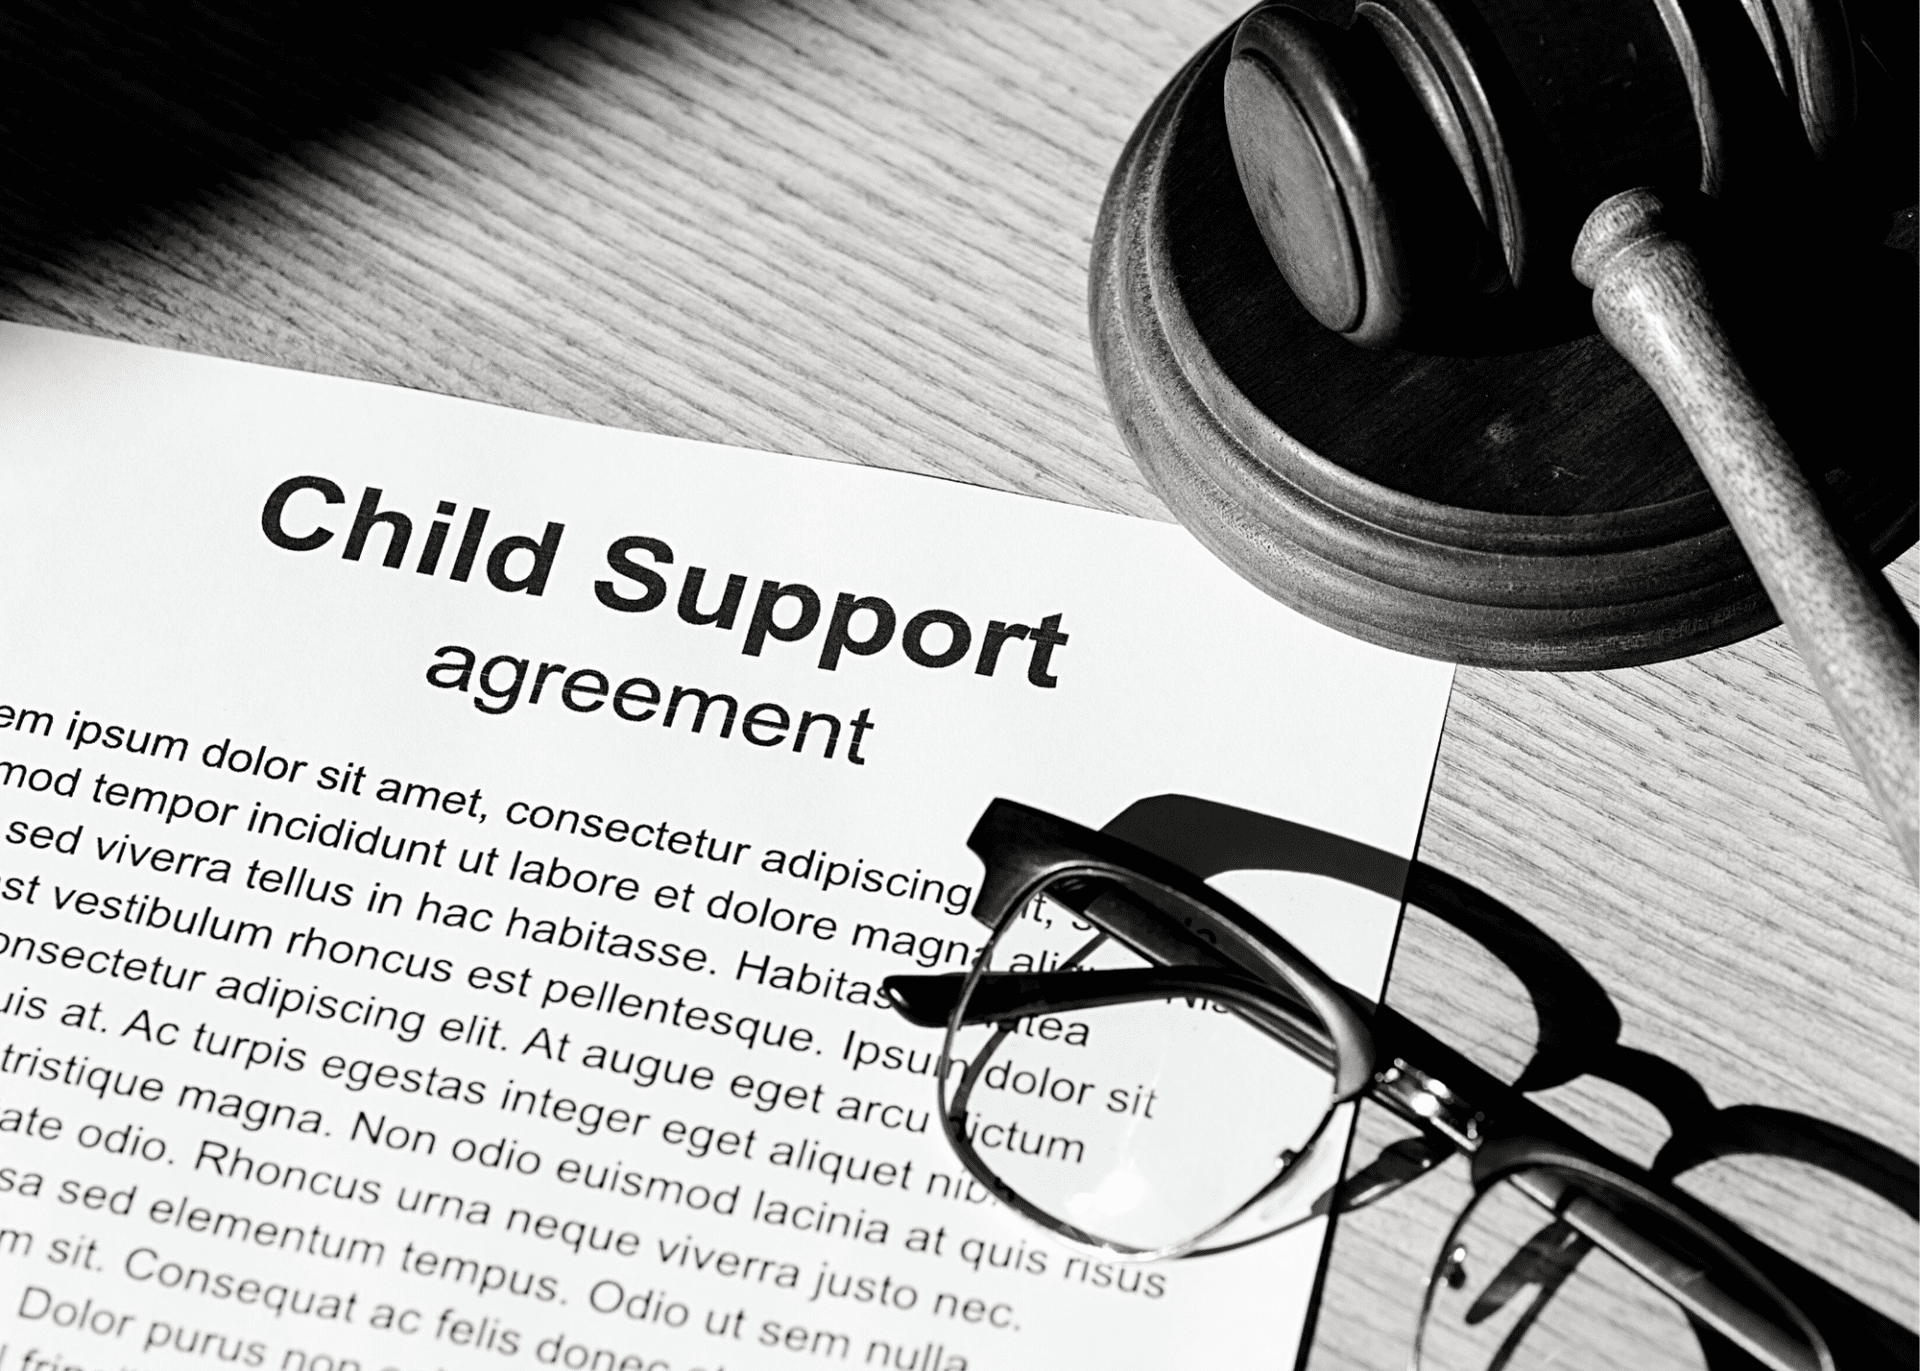 Child Support Lawyer in Nashville, TN